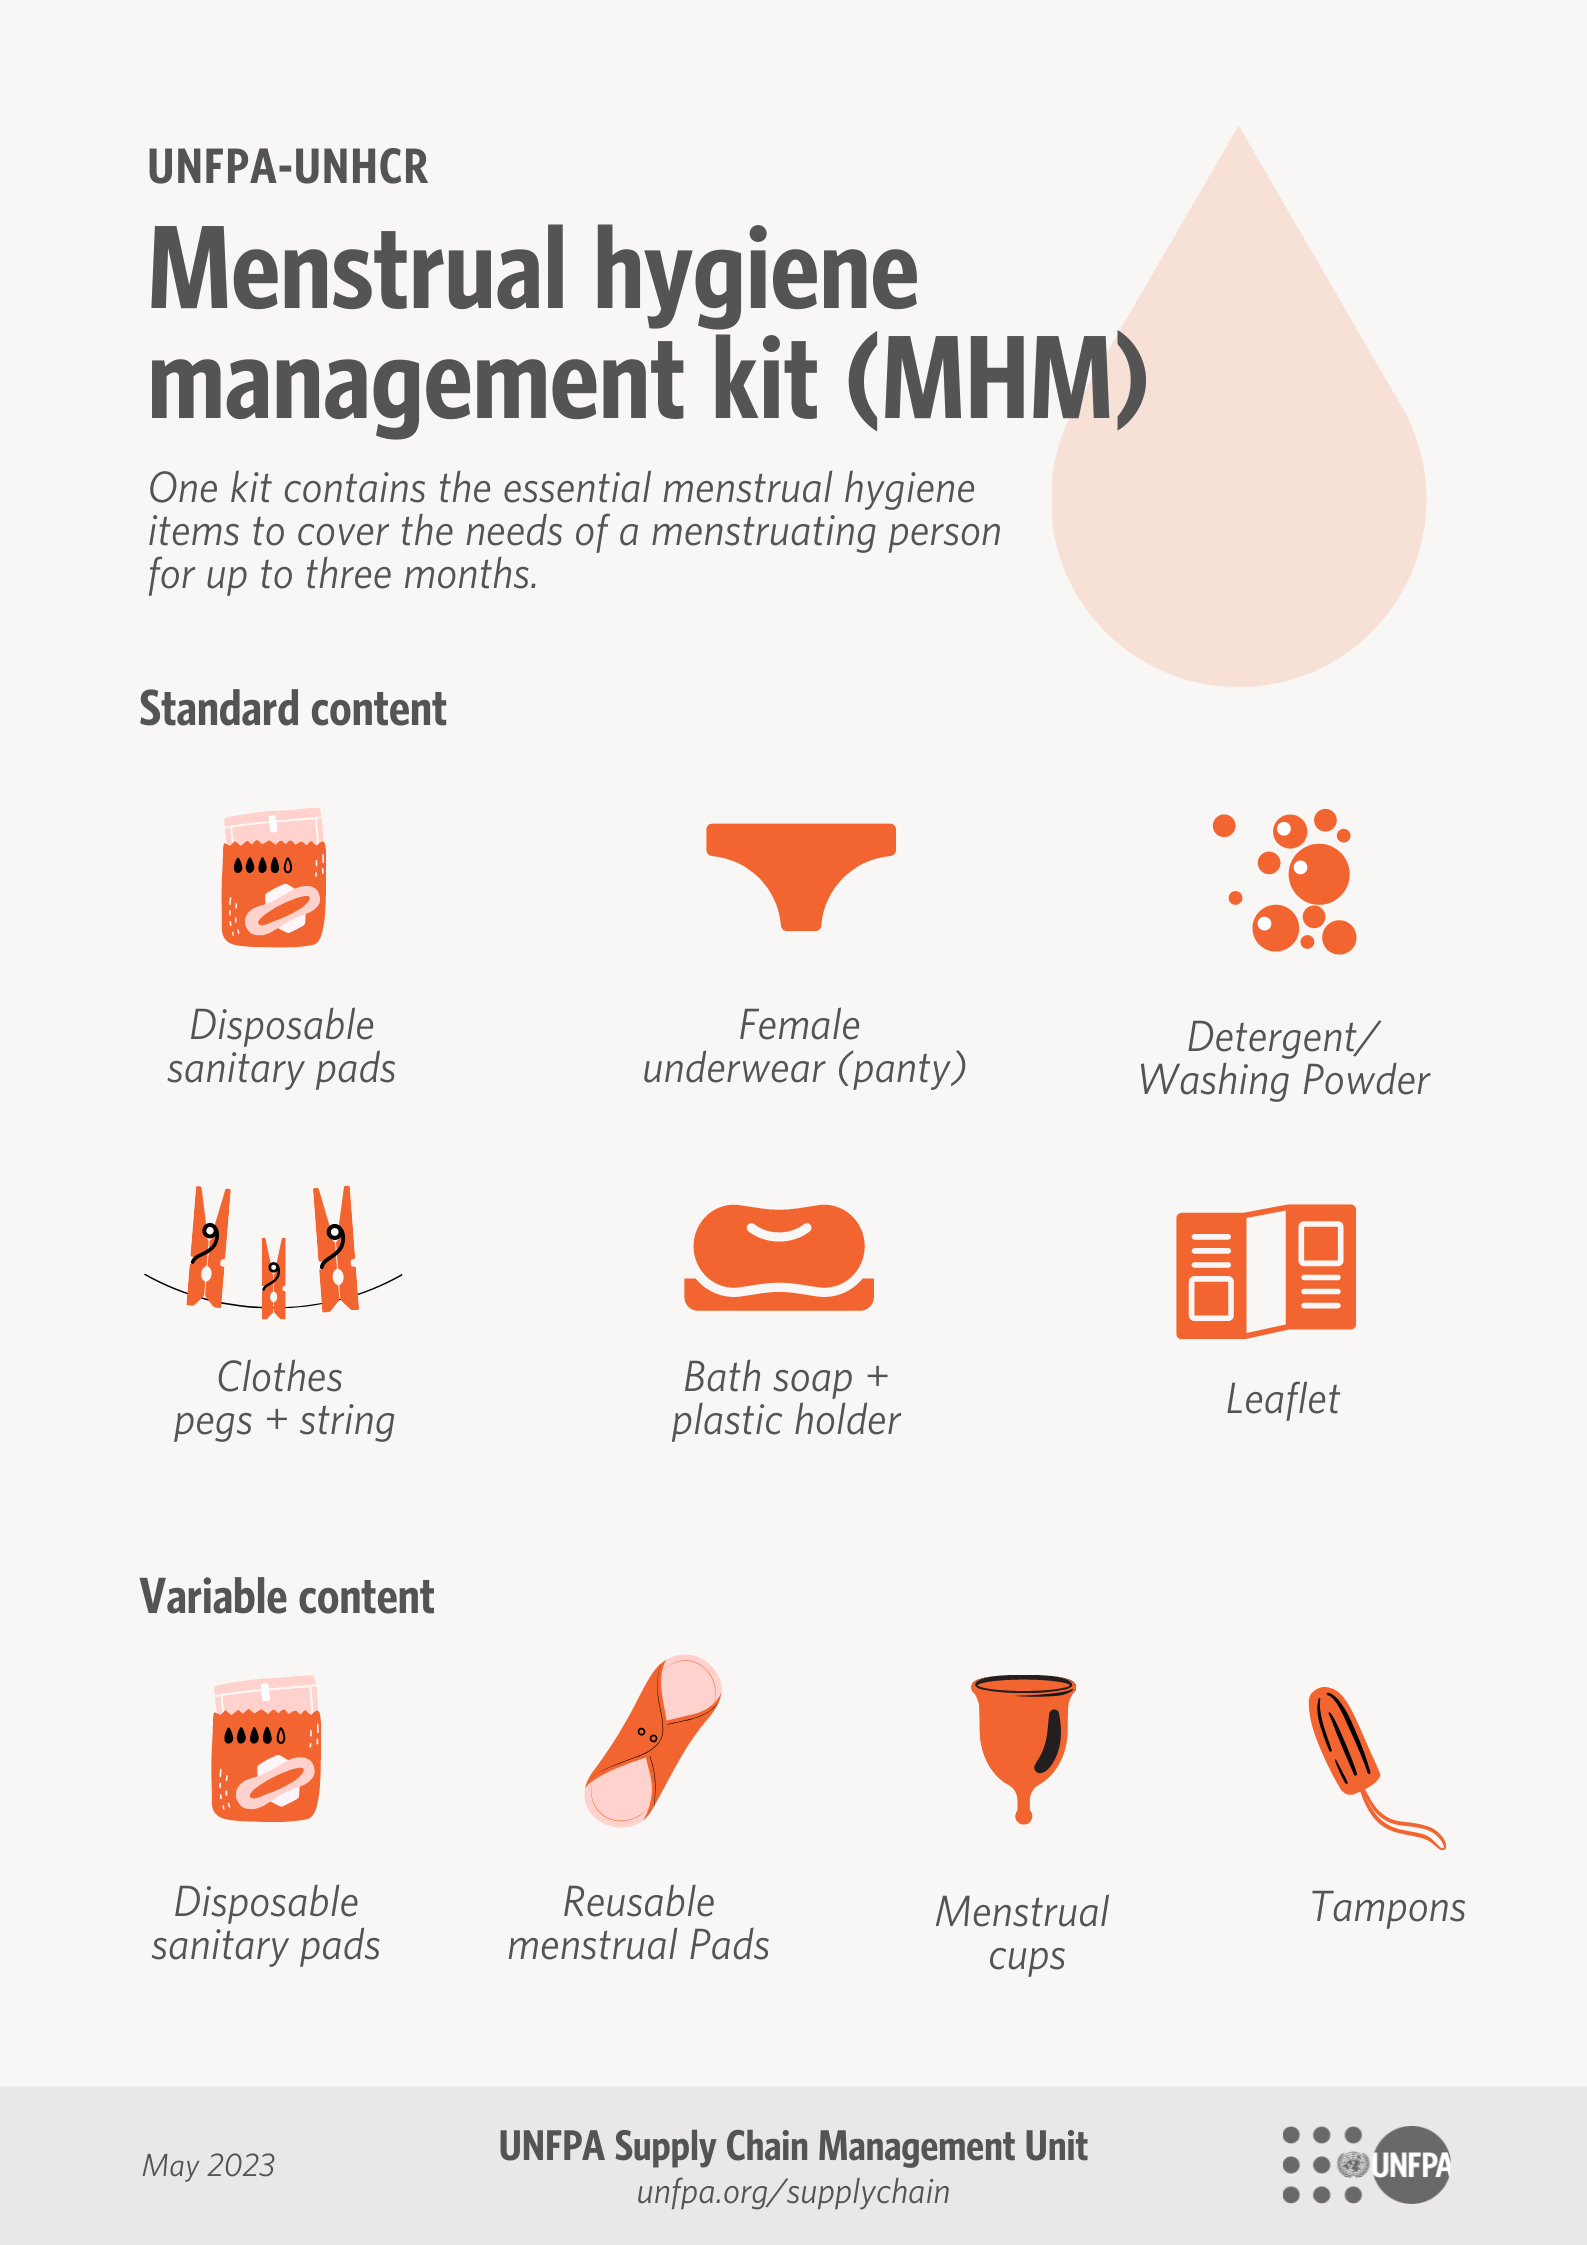 Menstrual health education materials